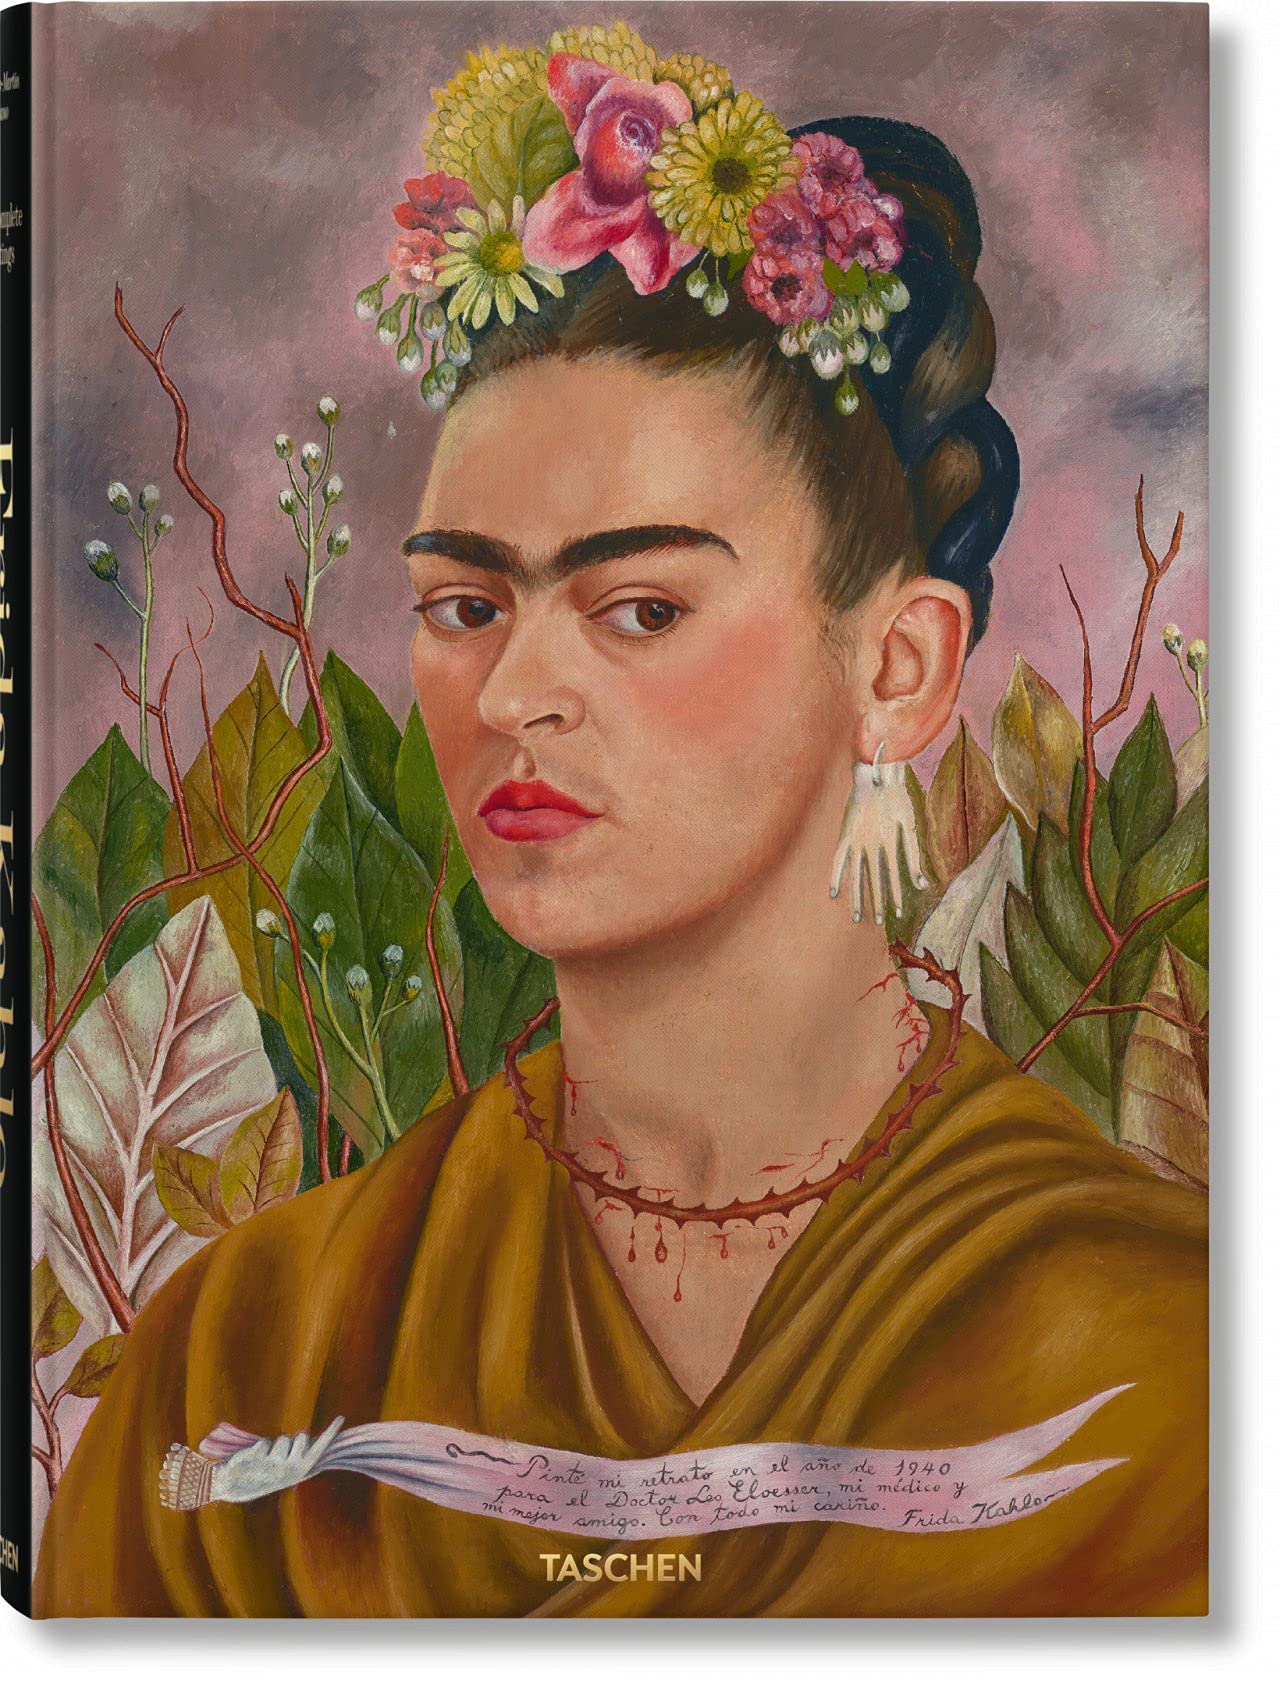 A exposição “Maravilhas do México” trará ao público brasiliense obras de Frida Kahlo  | Imagem: Divulgação